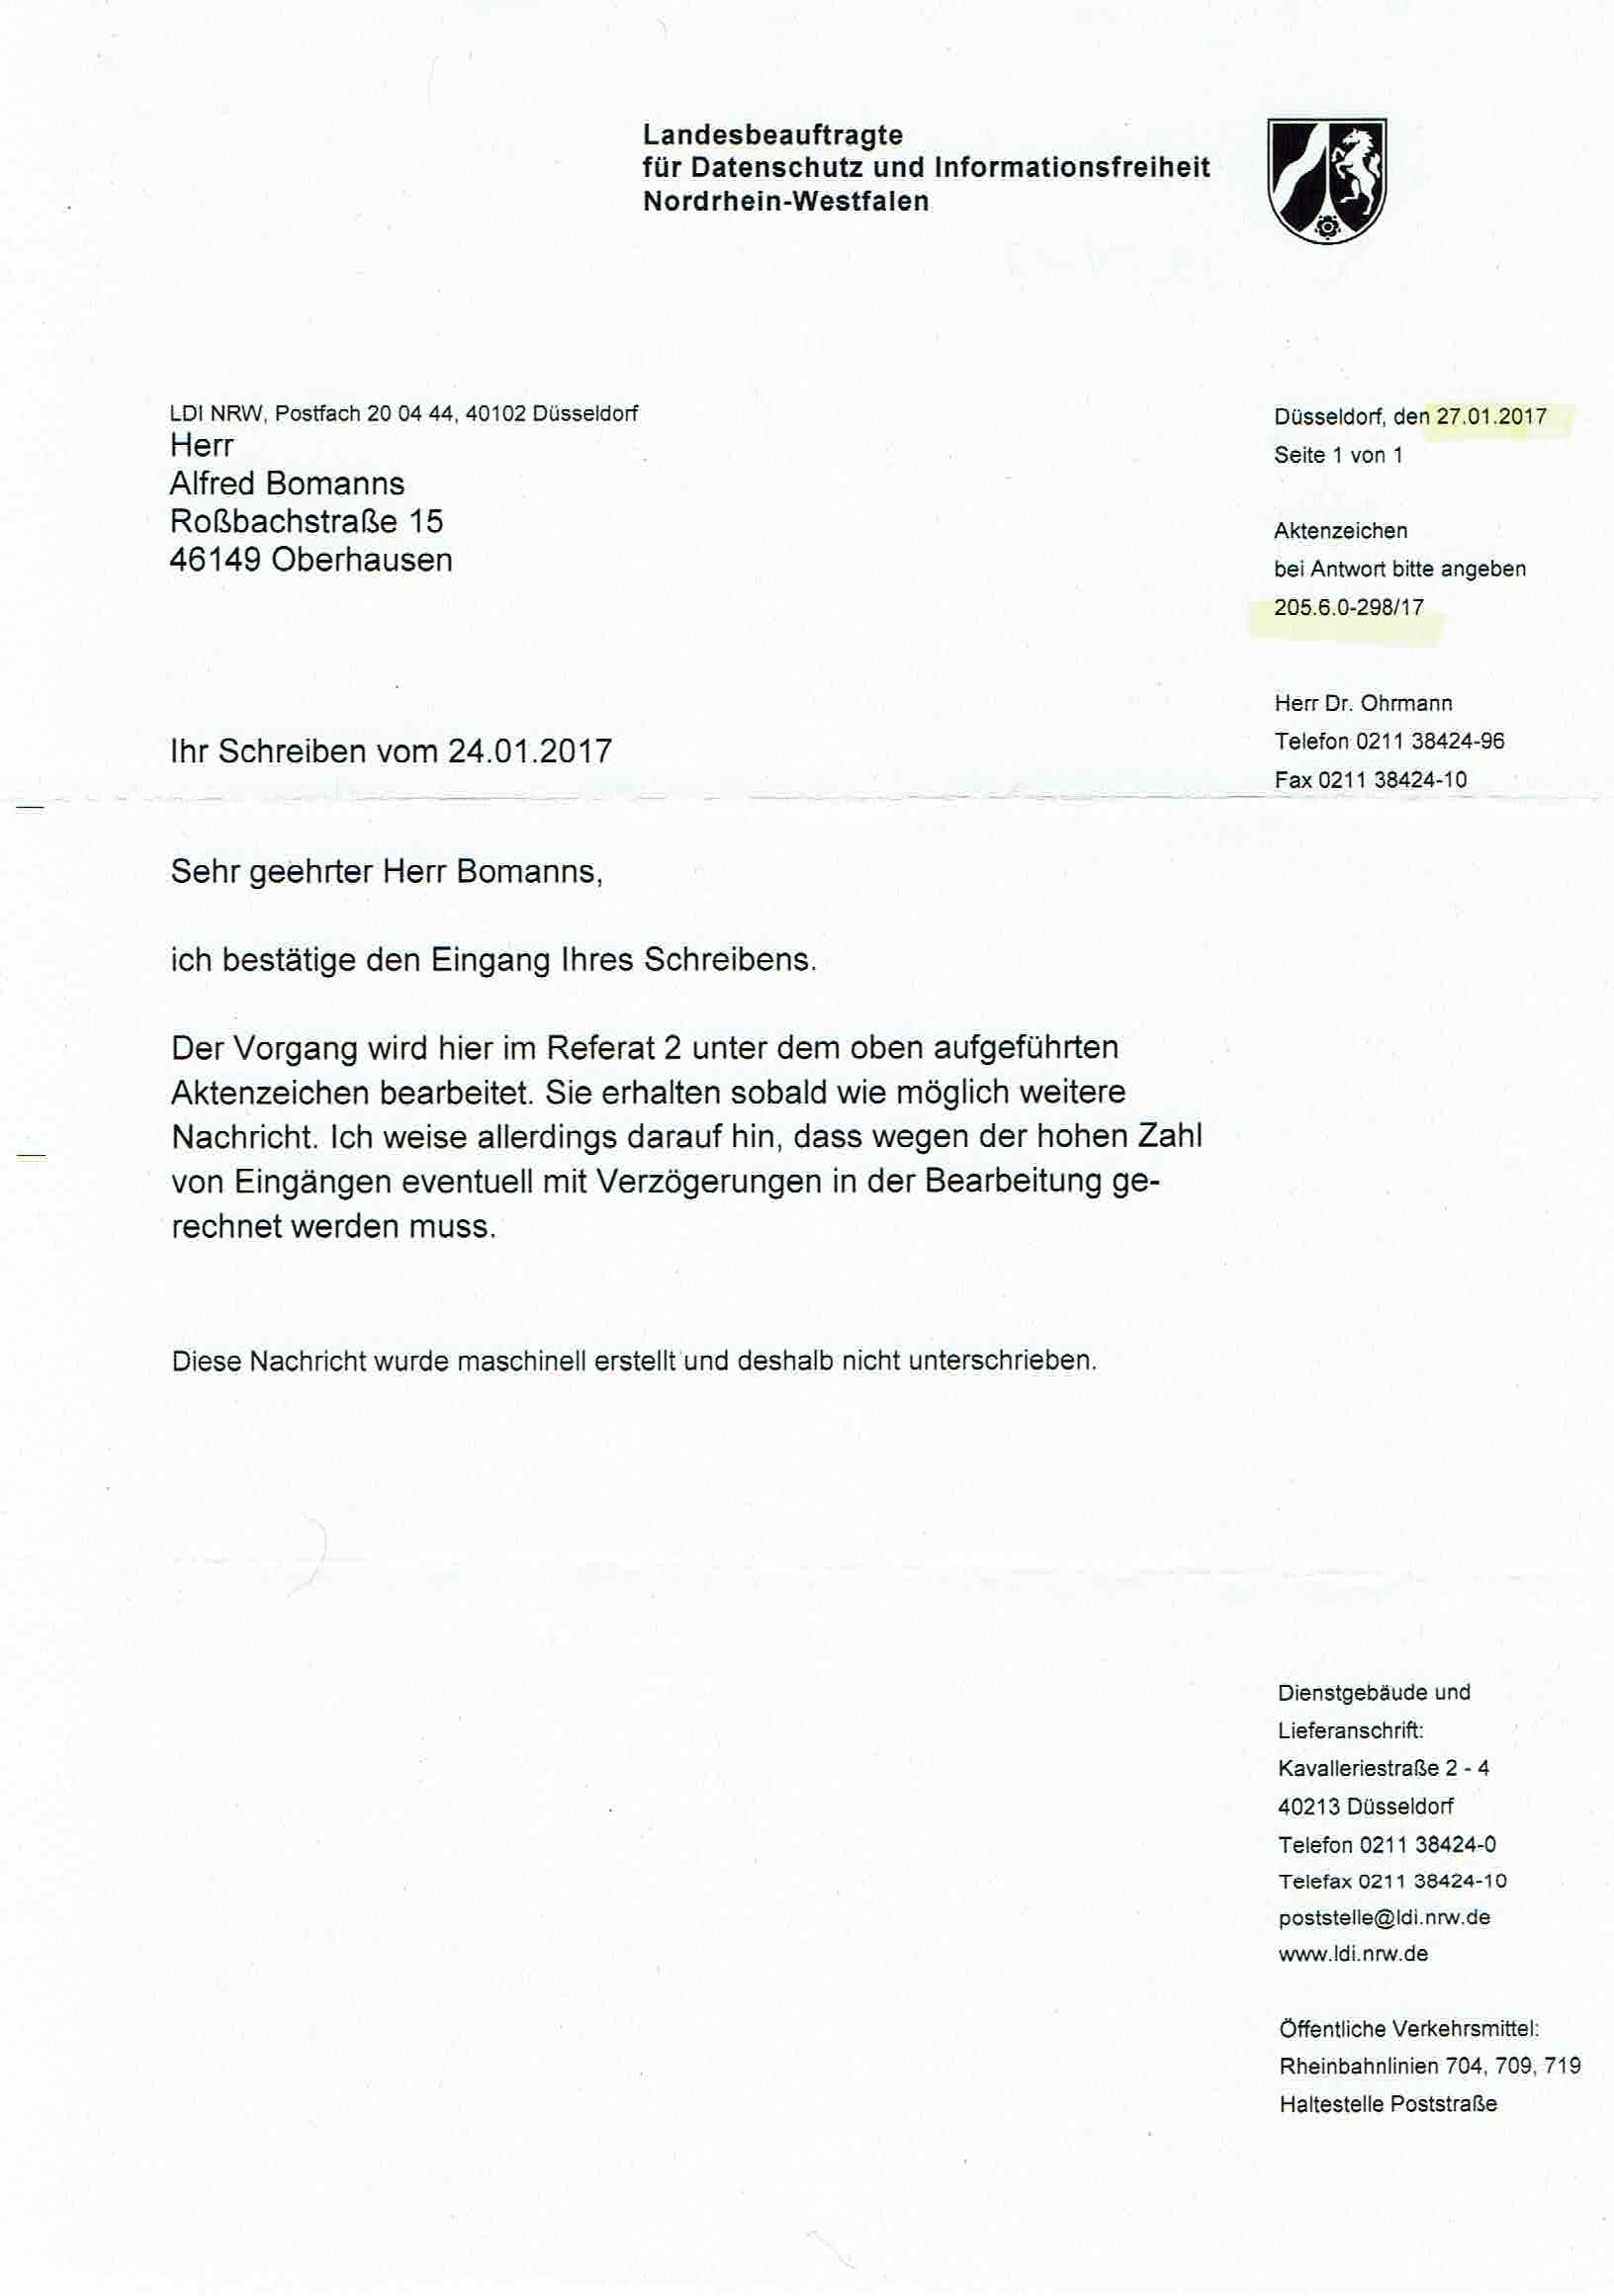 Eingangsbestätigung der Landesbeauftragen für Datenschutz und Informationsfreiheit Nordrhein-Westfalen vom 27.01.2017